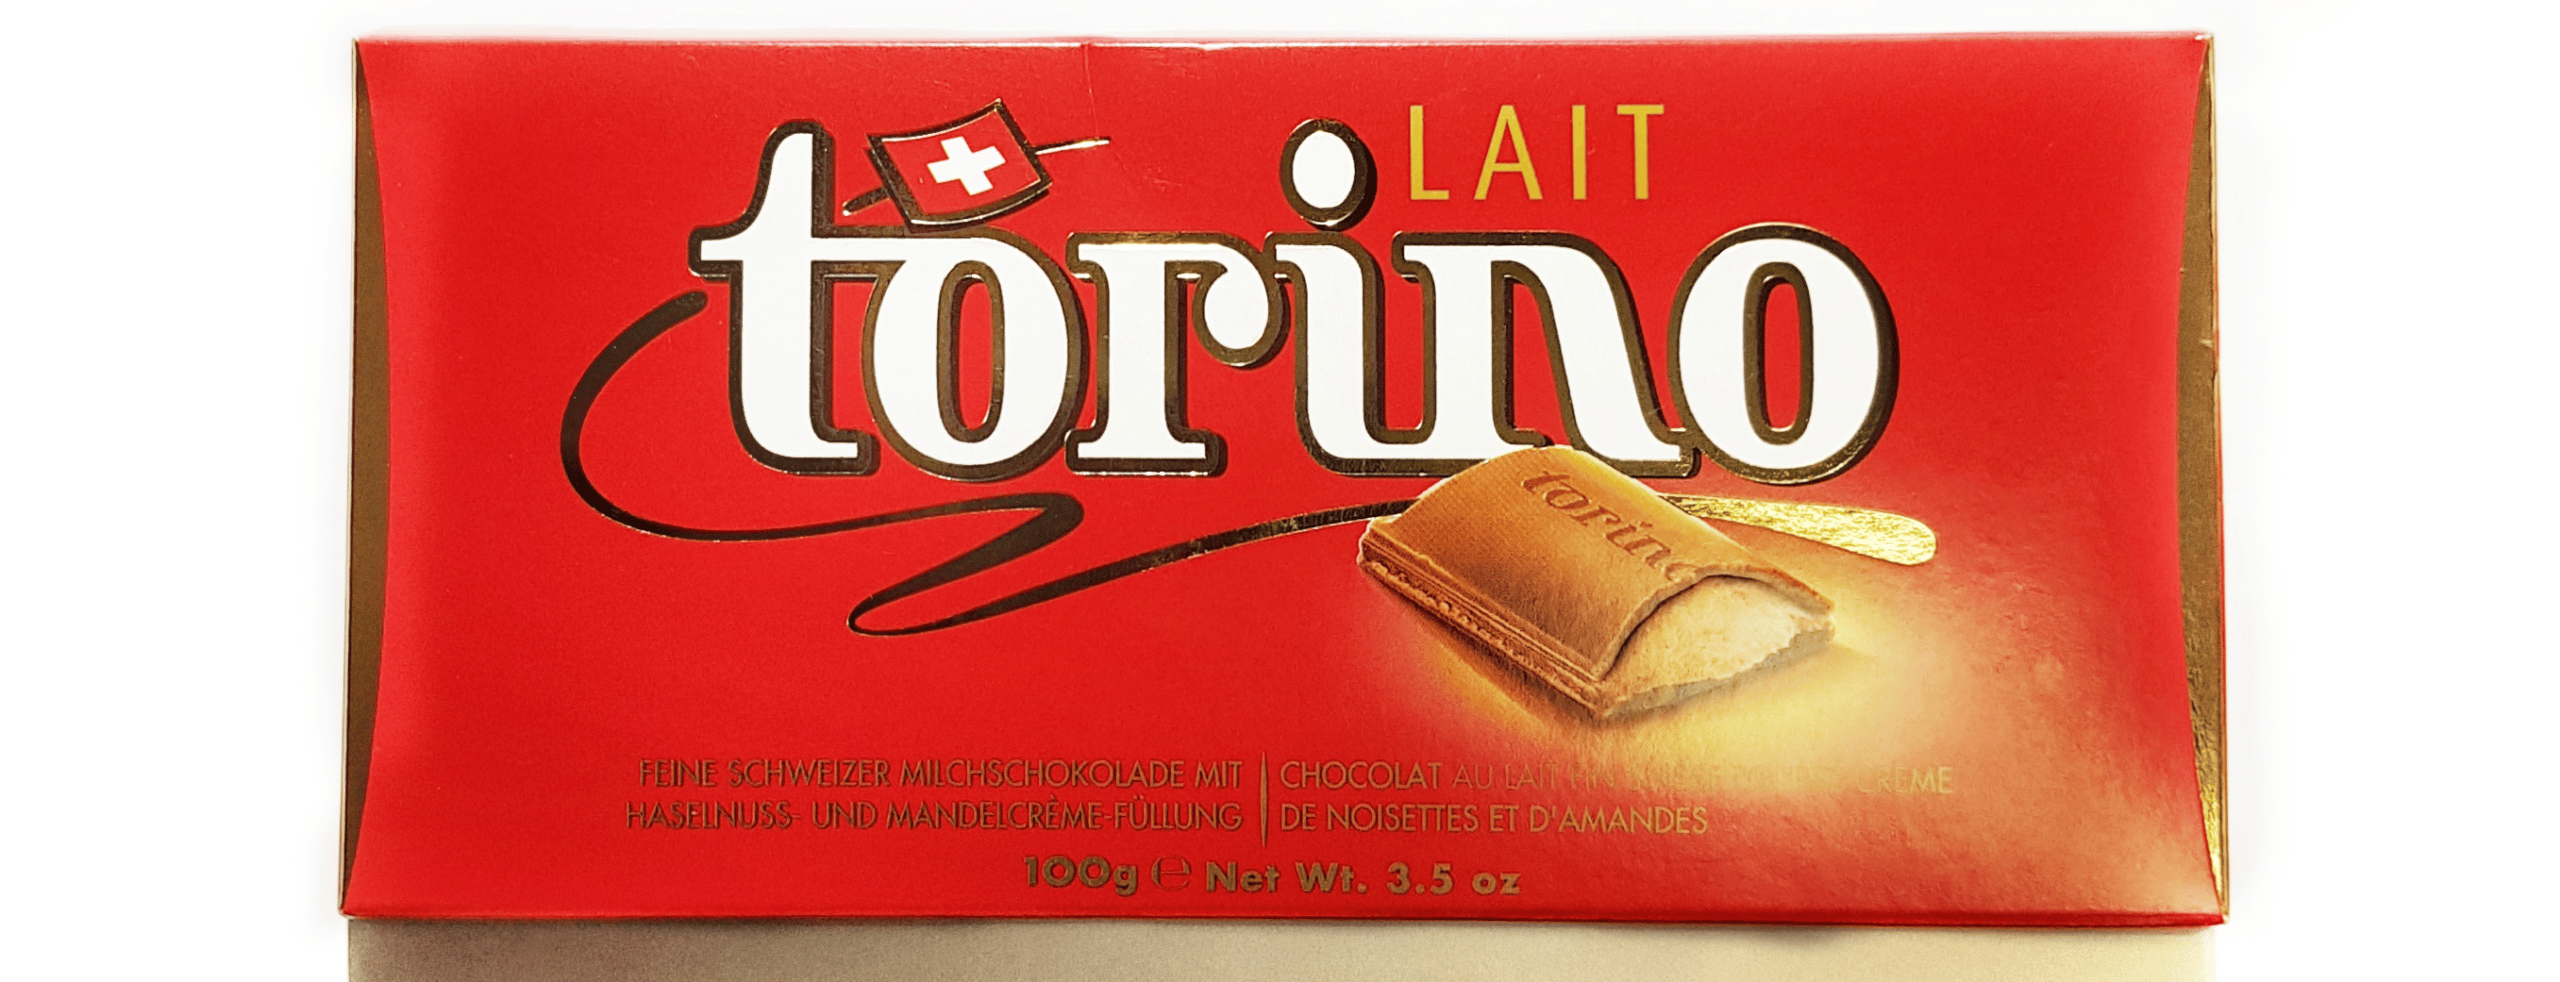 השוקולד השוויצרי זכה בעבר בהצלחה בארץ אך ירד מהמדפים בתחילת שנות ה-90